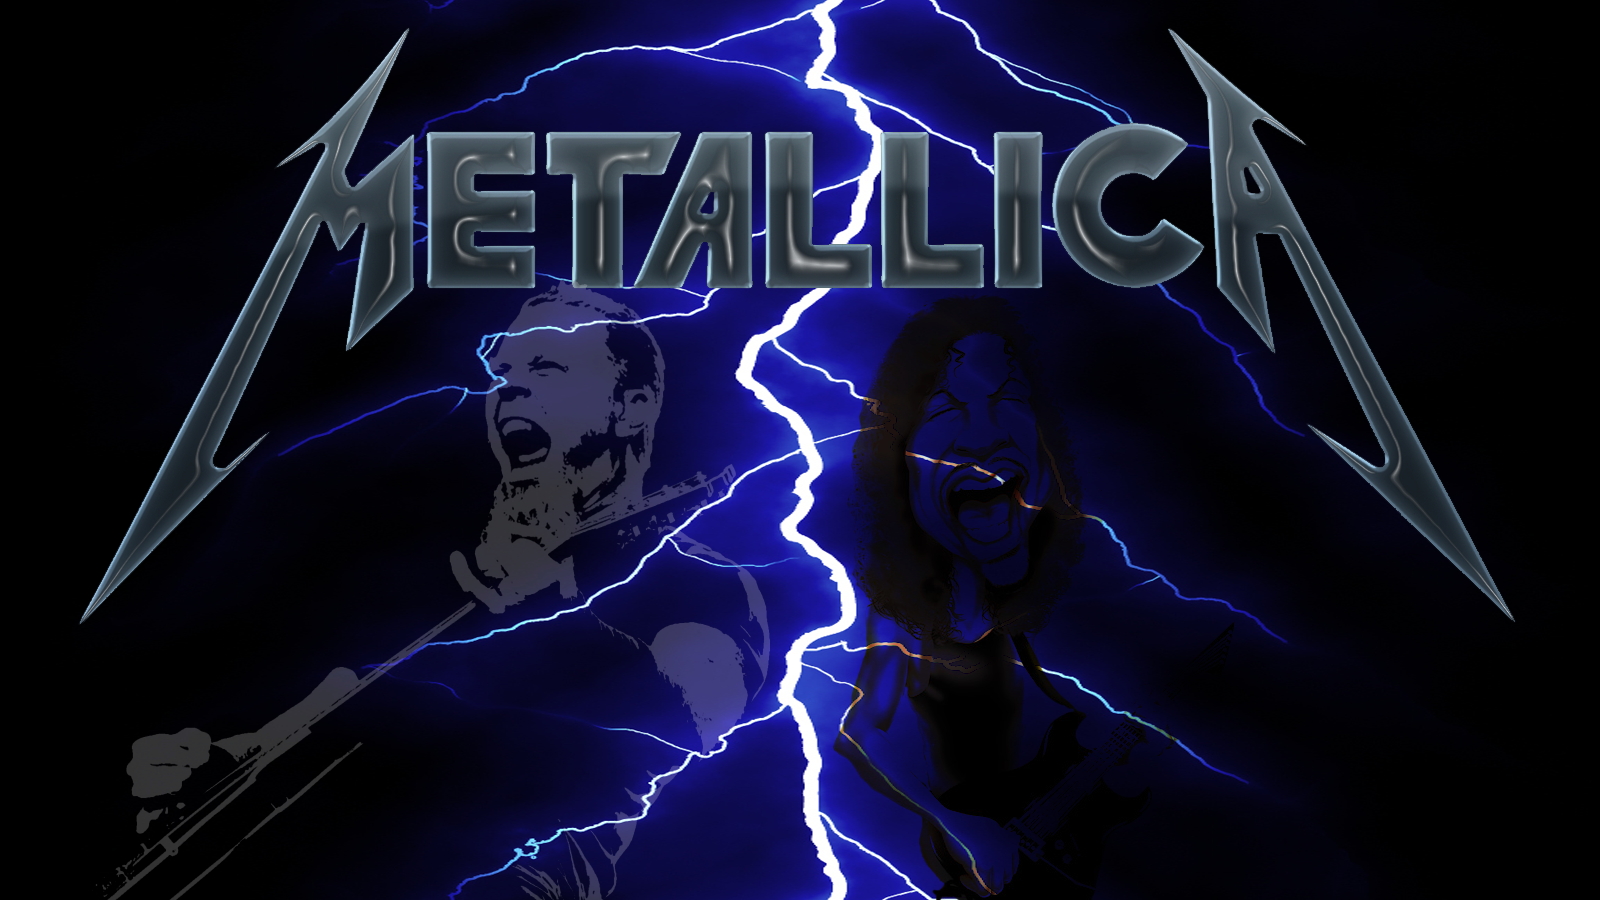 Metallica Puter Wallpaper Desktop Background Id